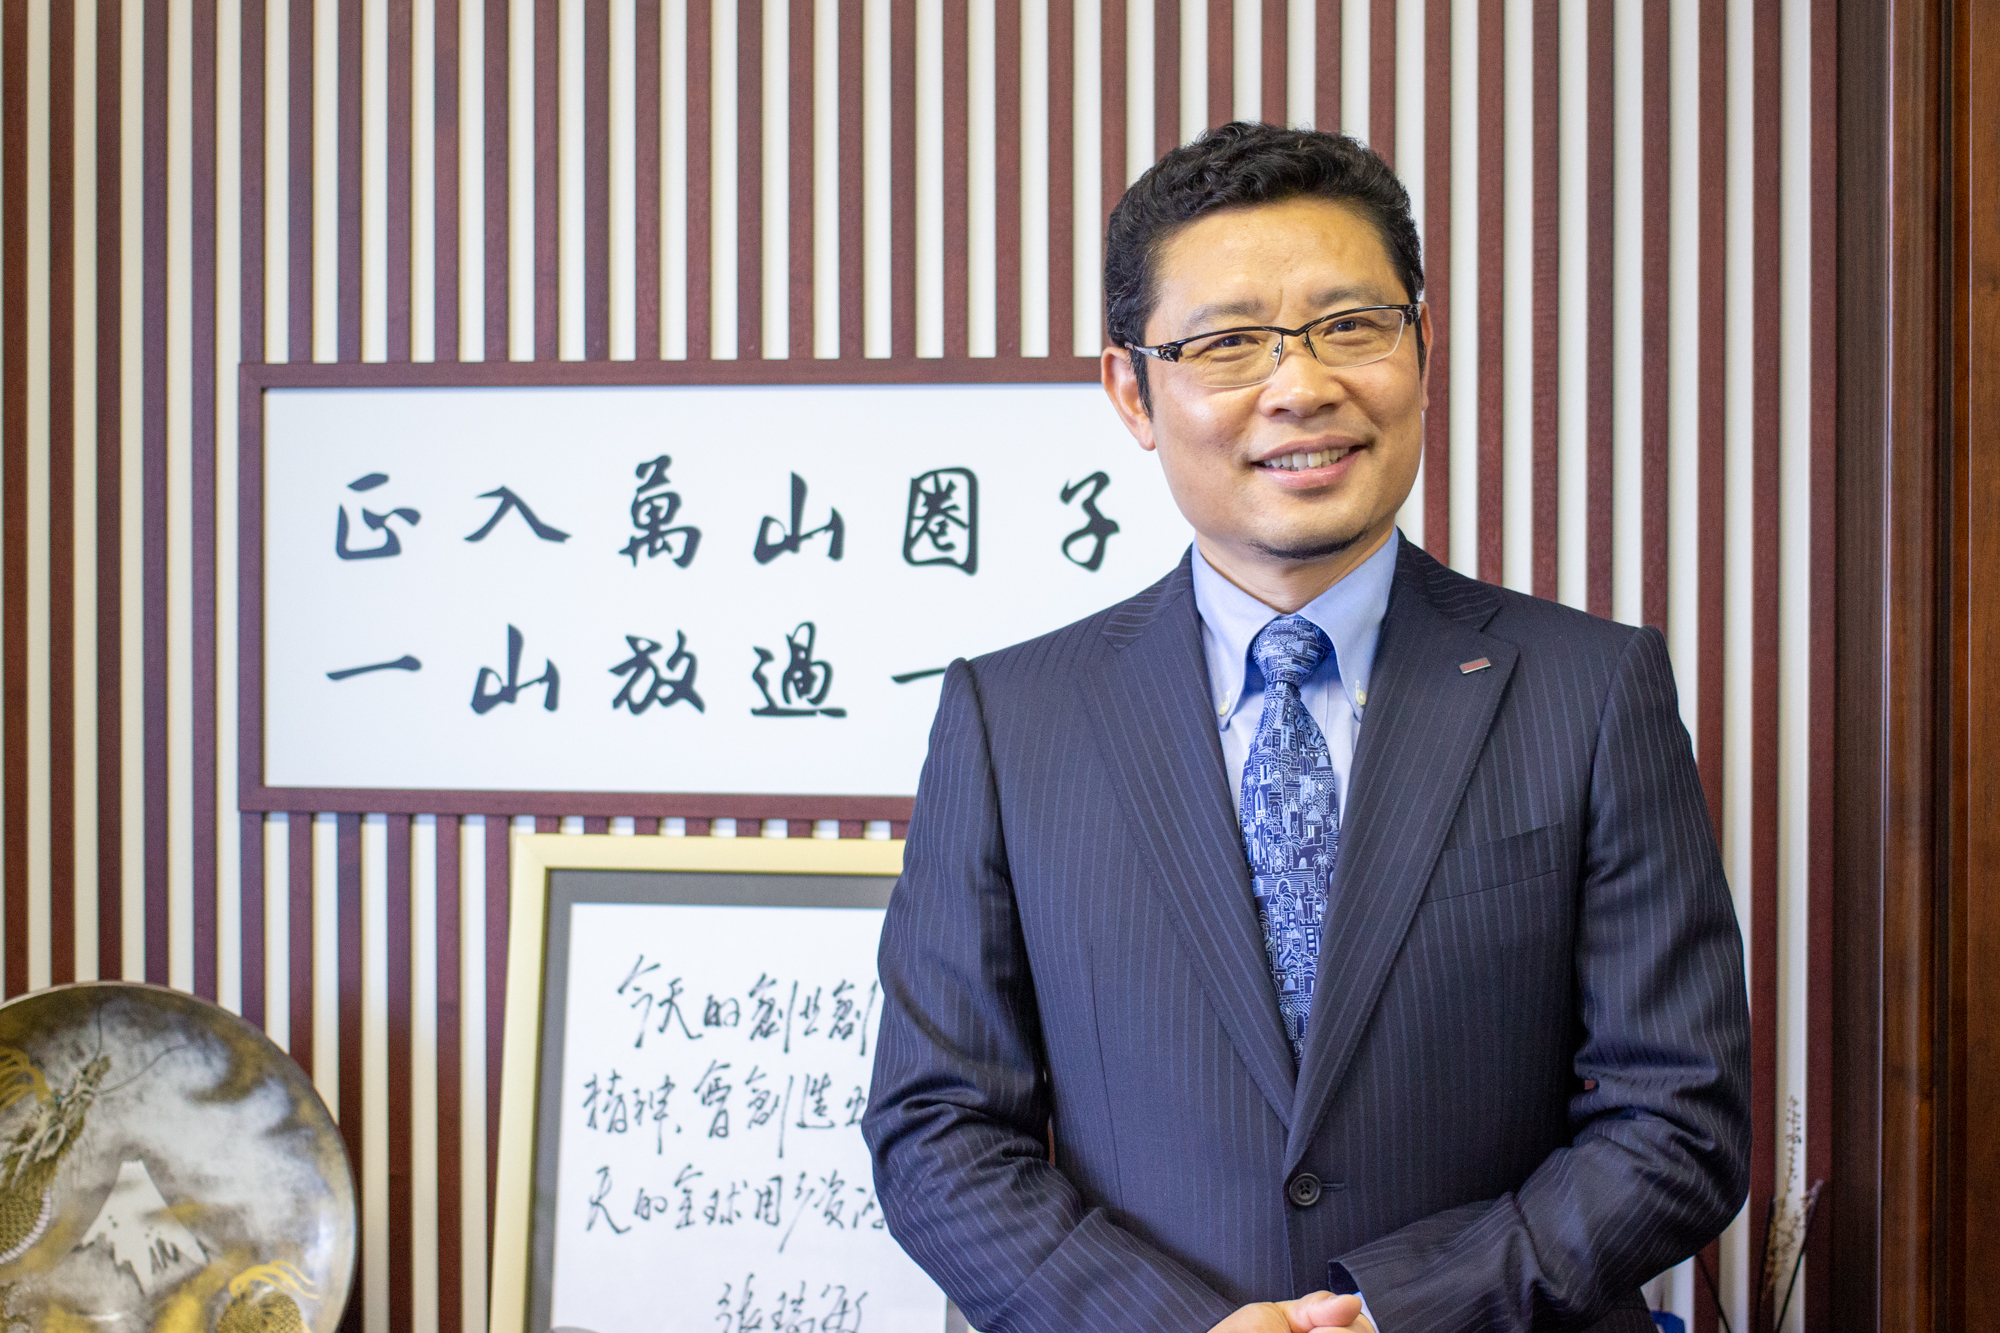 大阪市経済戦略局が管理運営するＷＥＢサイト 「INVEST OSAKA」に杜CEOのインタビューが掲載されました。